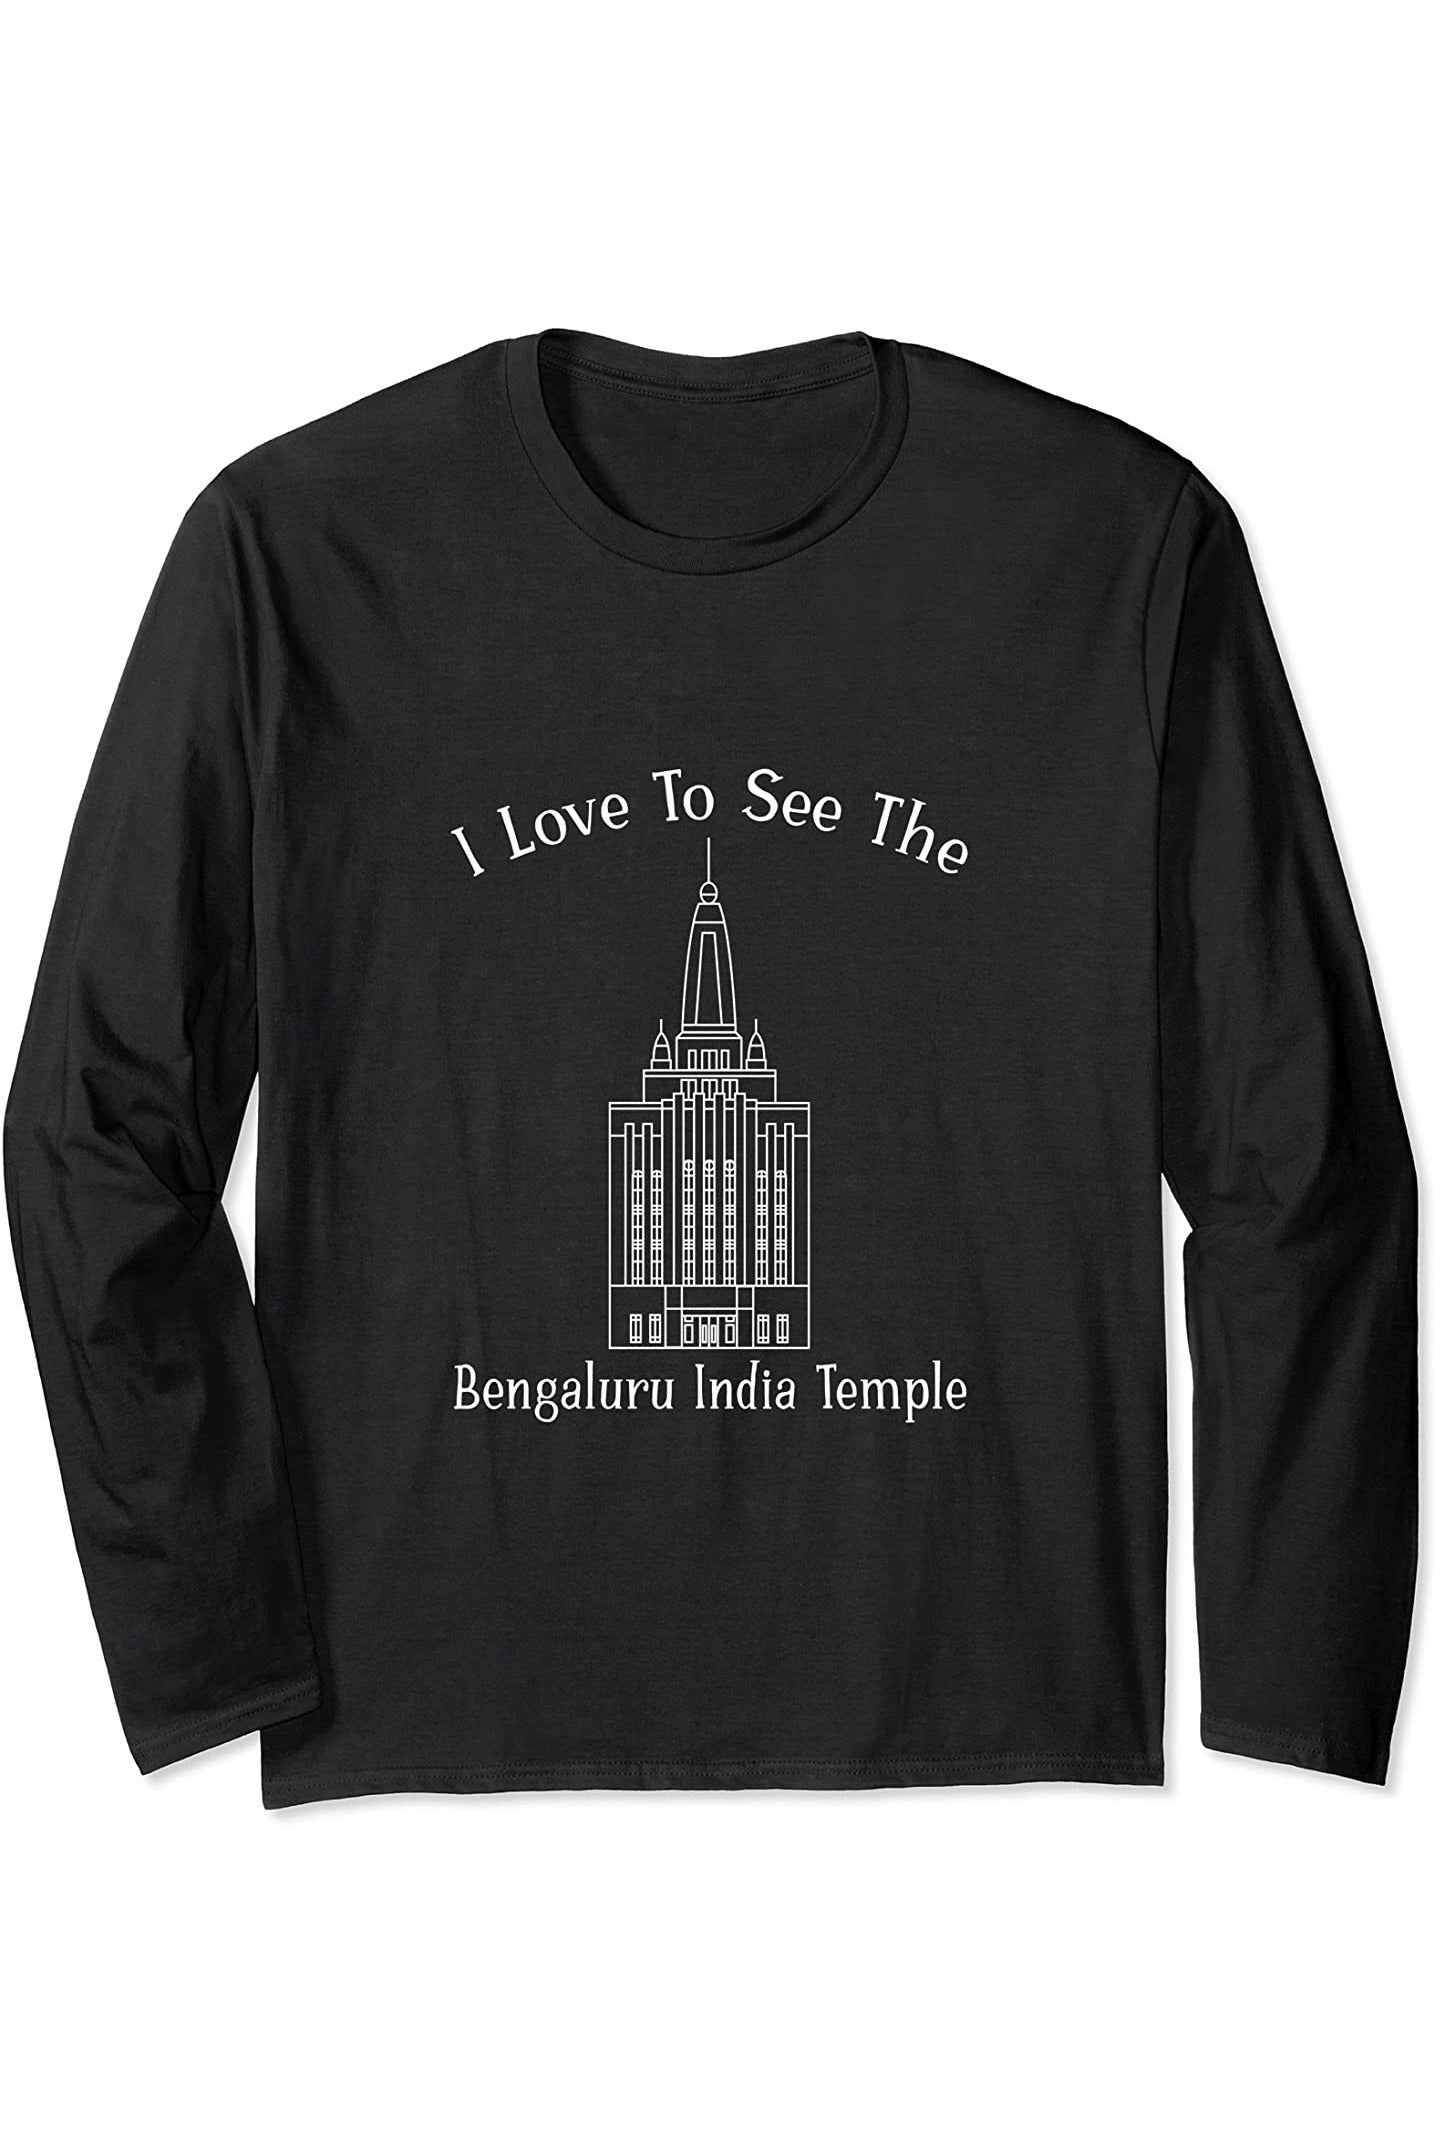 Bengaluru India Temple Long Sleeve T-Shirt - Happy Style (English) US